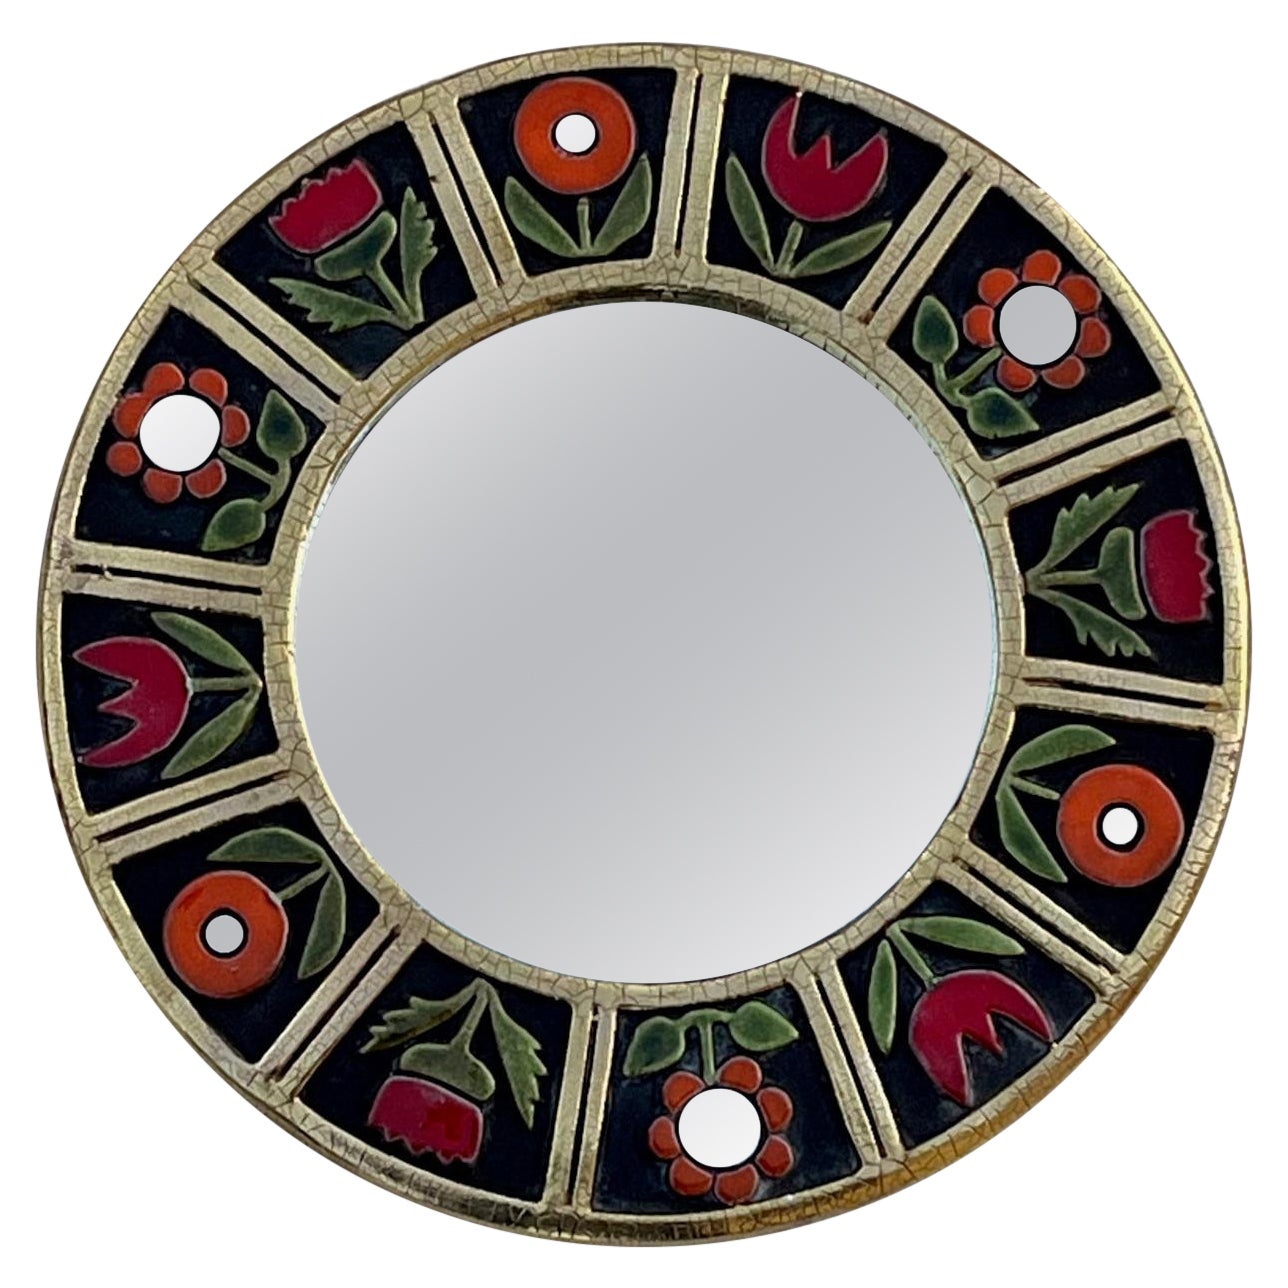 Round ceramic mirror by Mithé Espelt, circa 1960